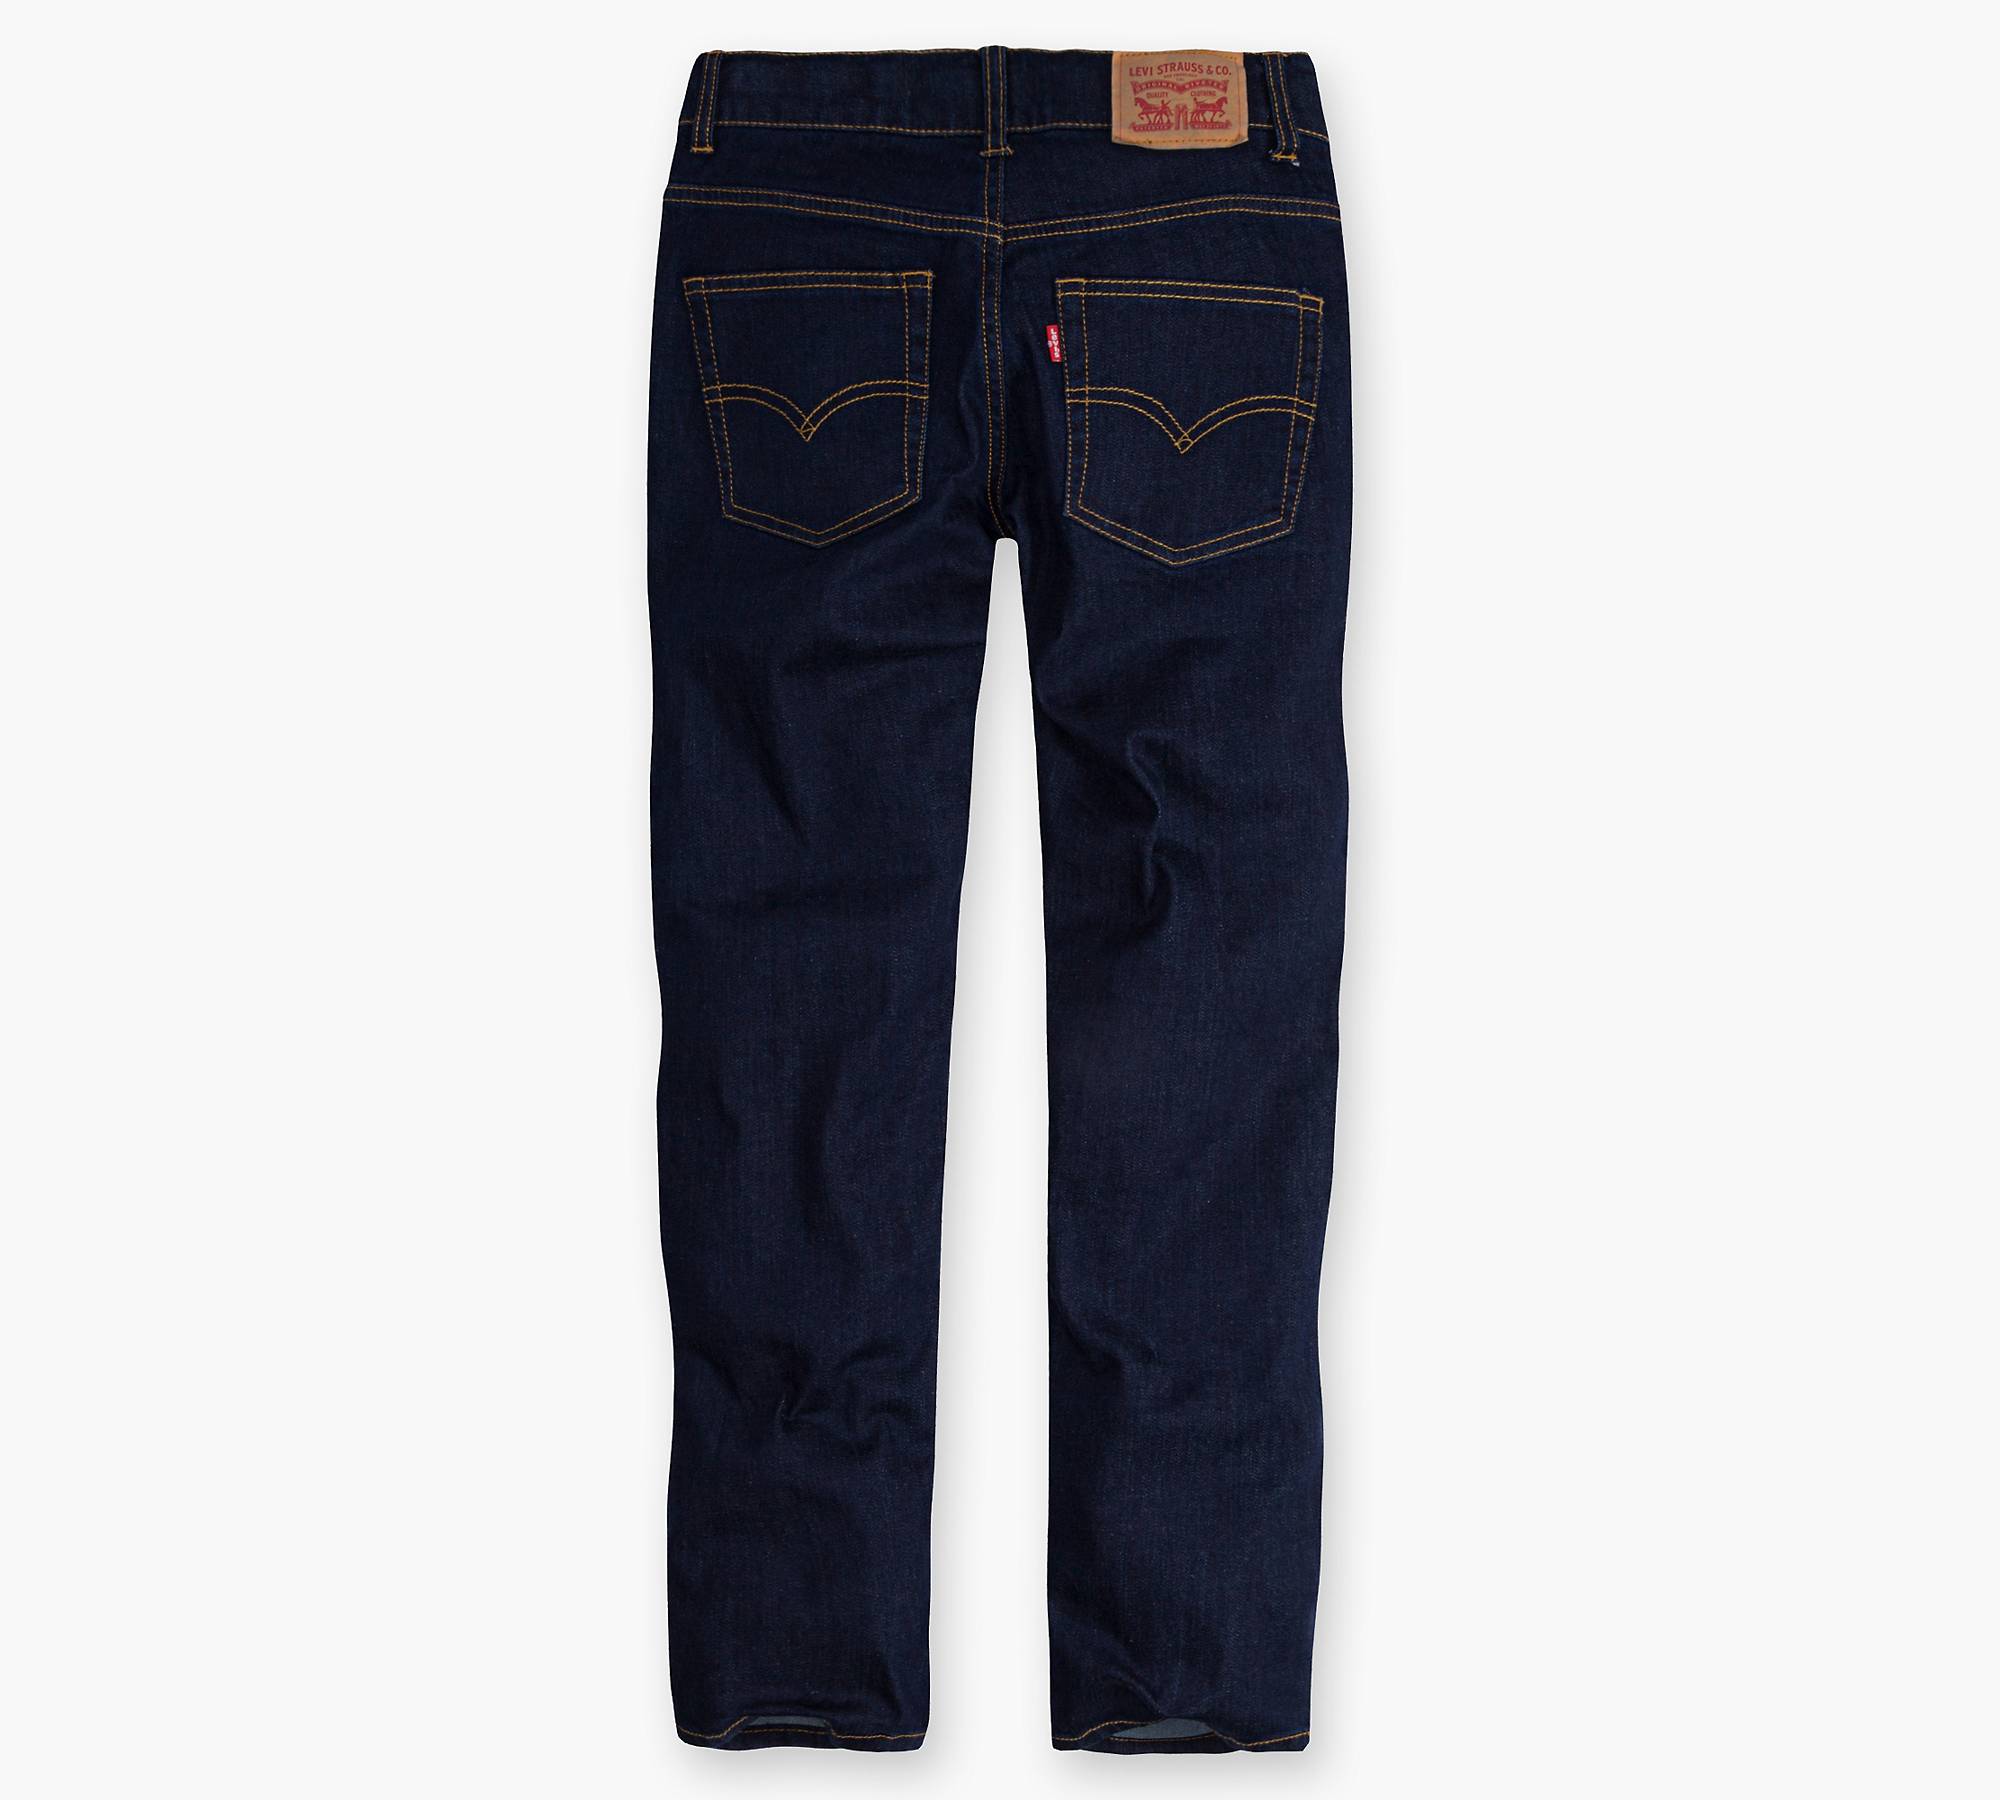 502™ Taper Fit Big Boys Jeans 8-20 - Dark Wash | Levi's® US